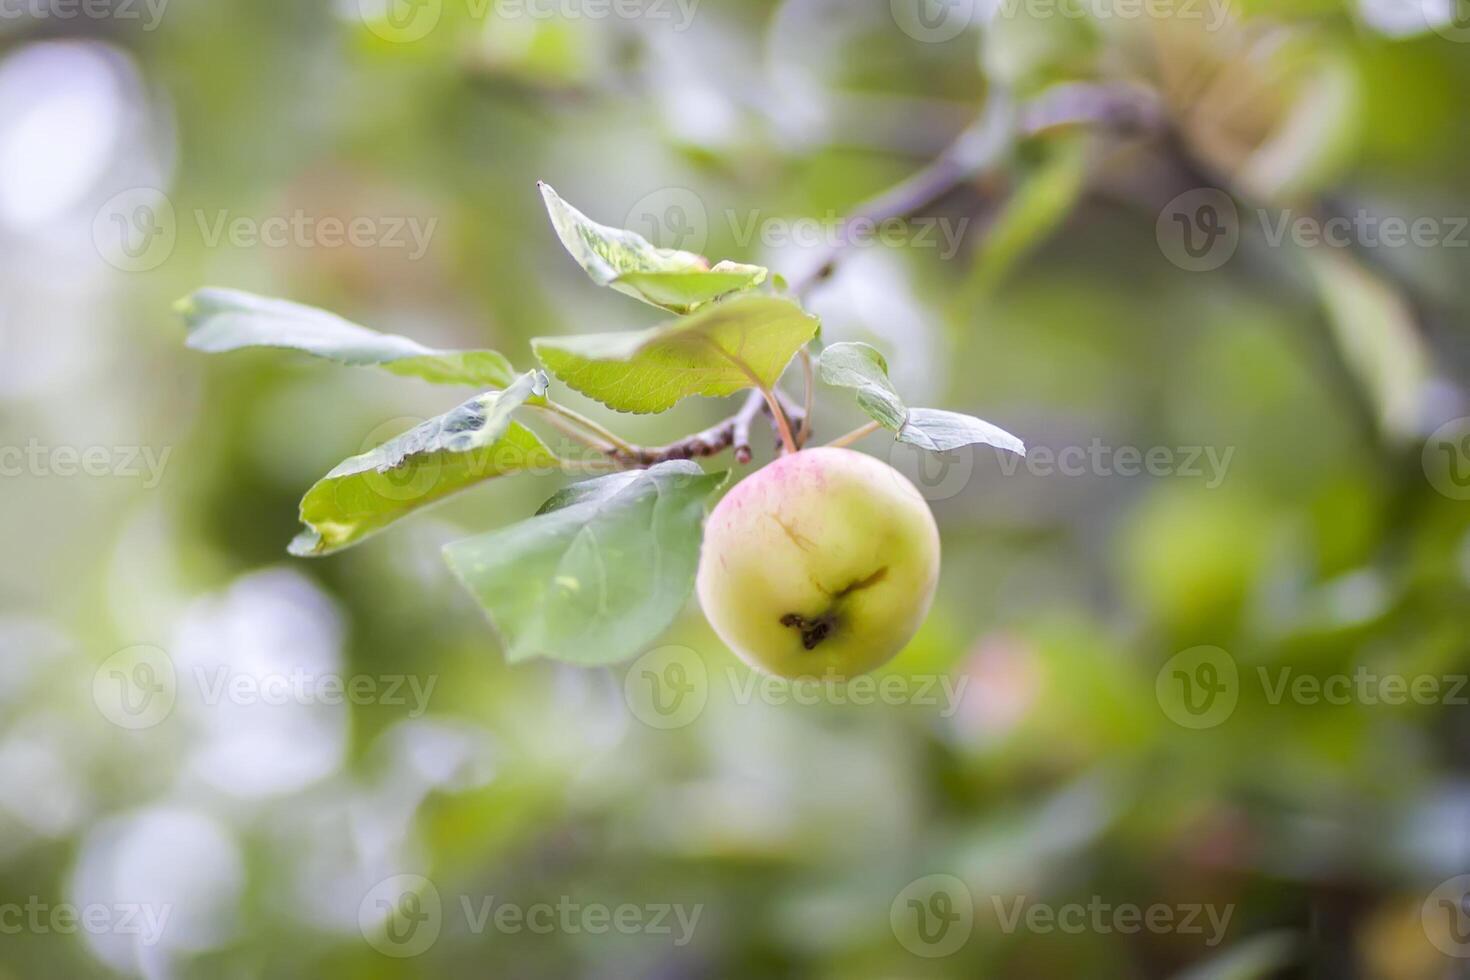 rojo maduro manzanas en árbol rama foto